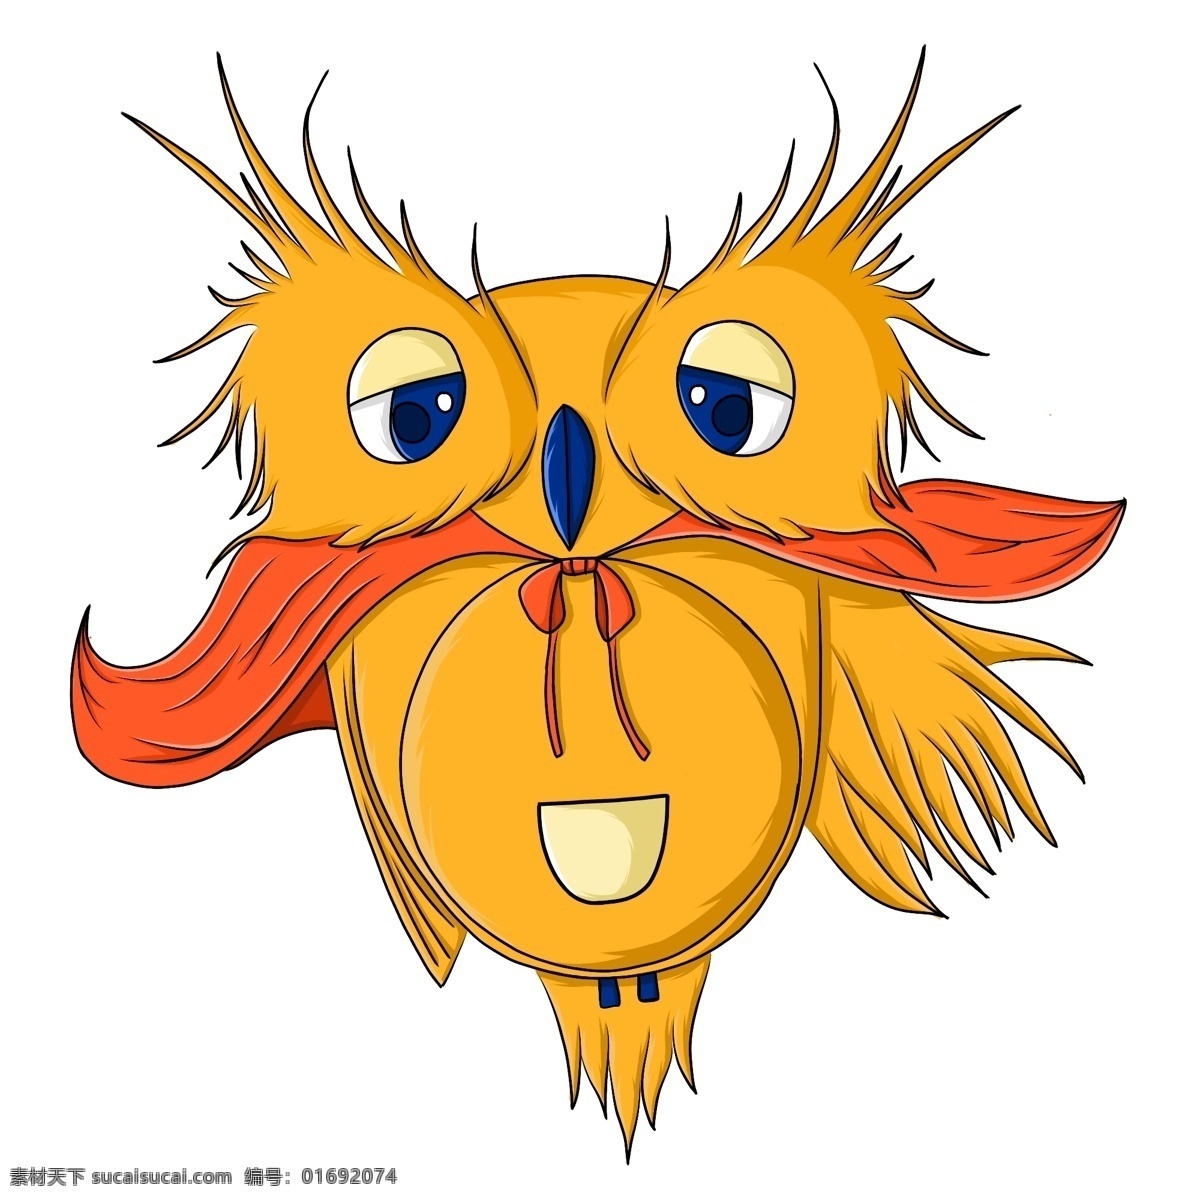 猫头鹰 ps 文件 原创 卡通 可爱 动物 黄色 编辑